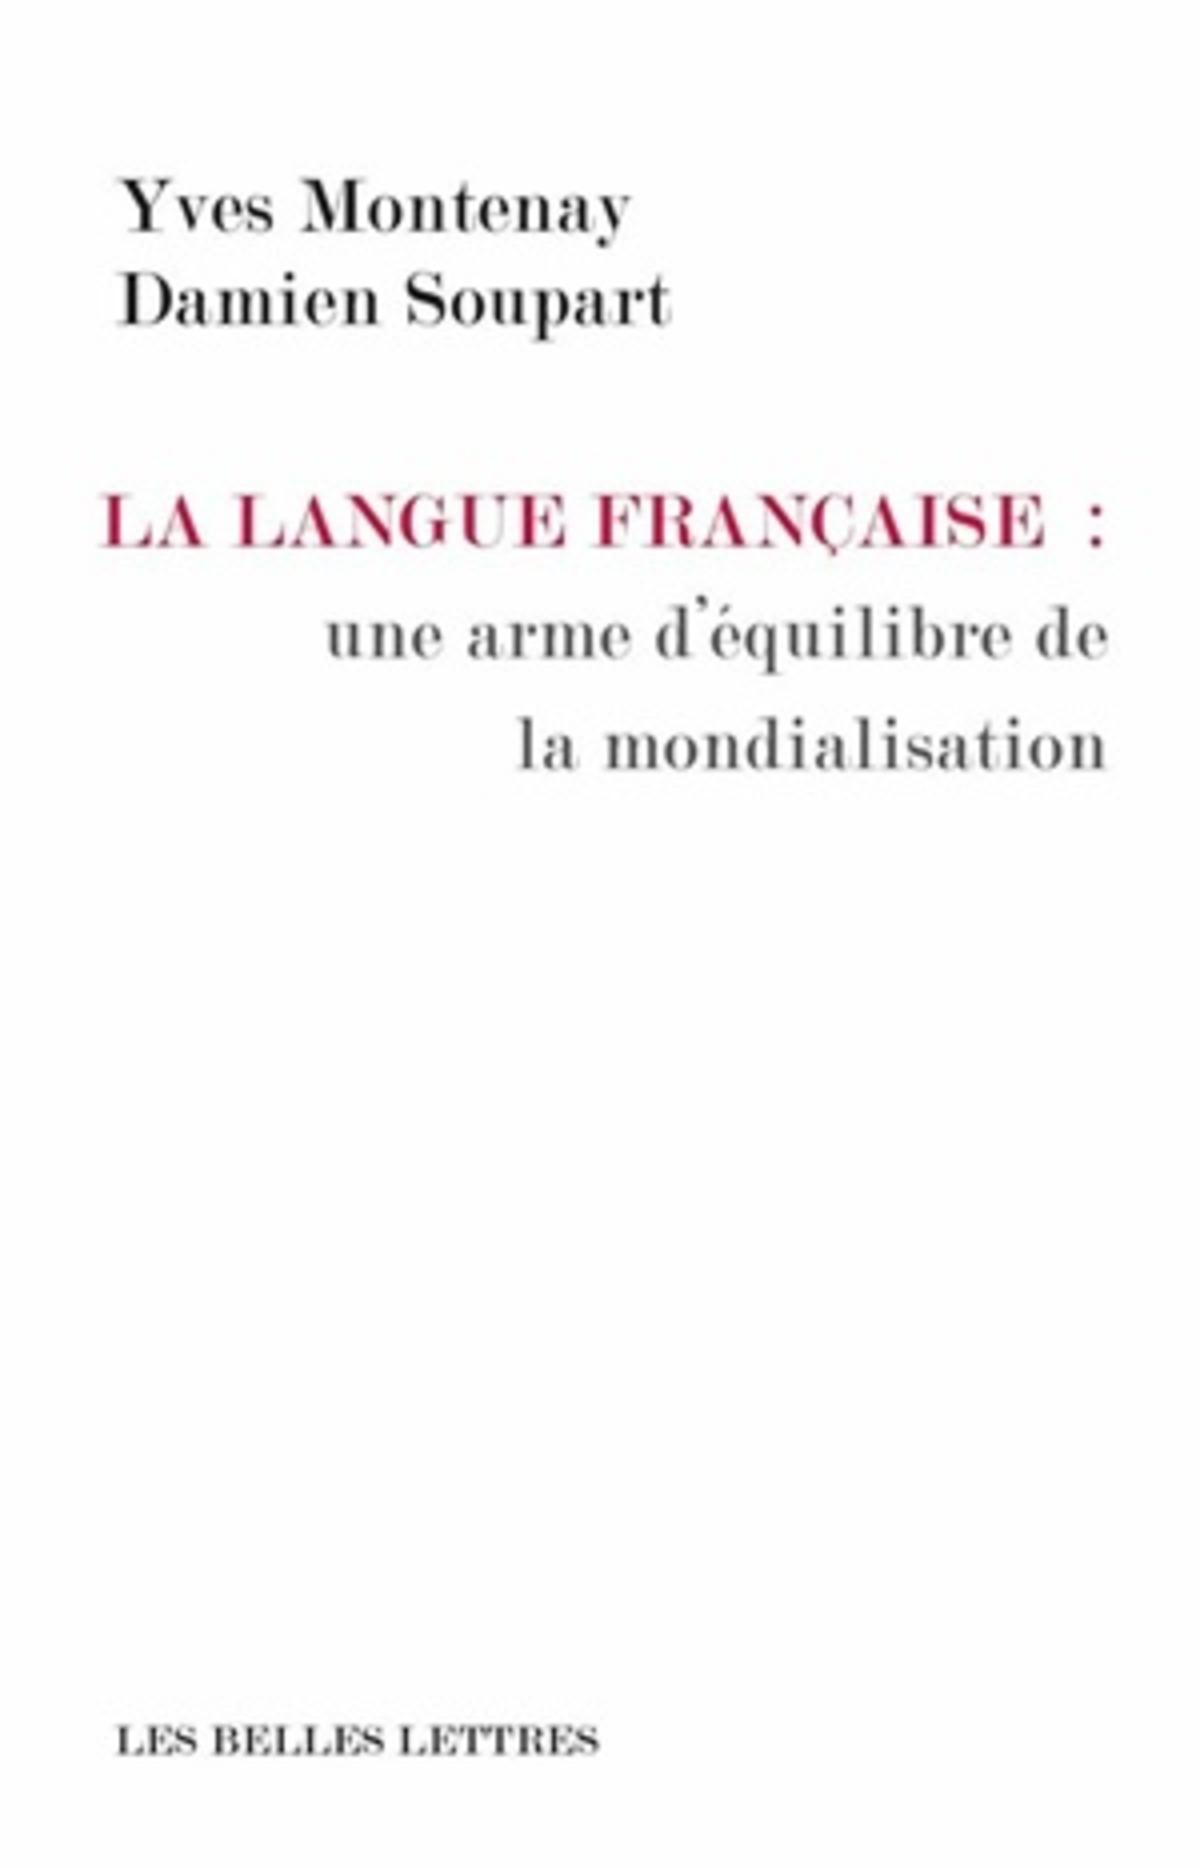 La Langue française: une arme d'équilibre de la mondialisation